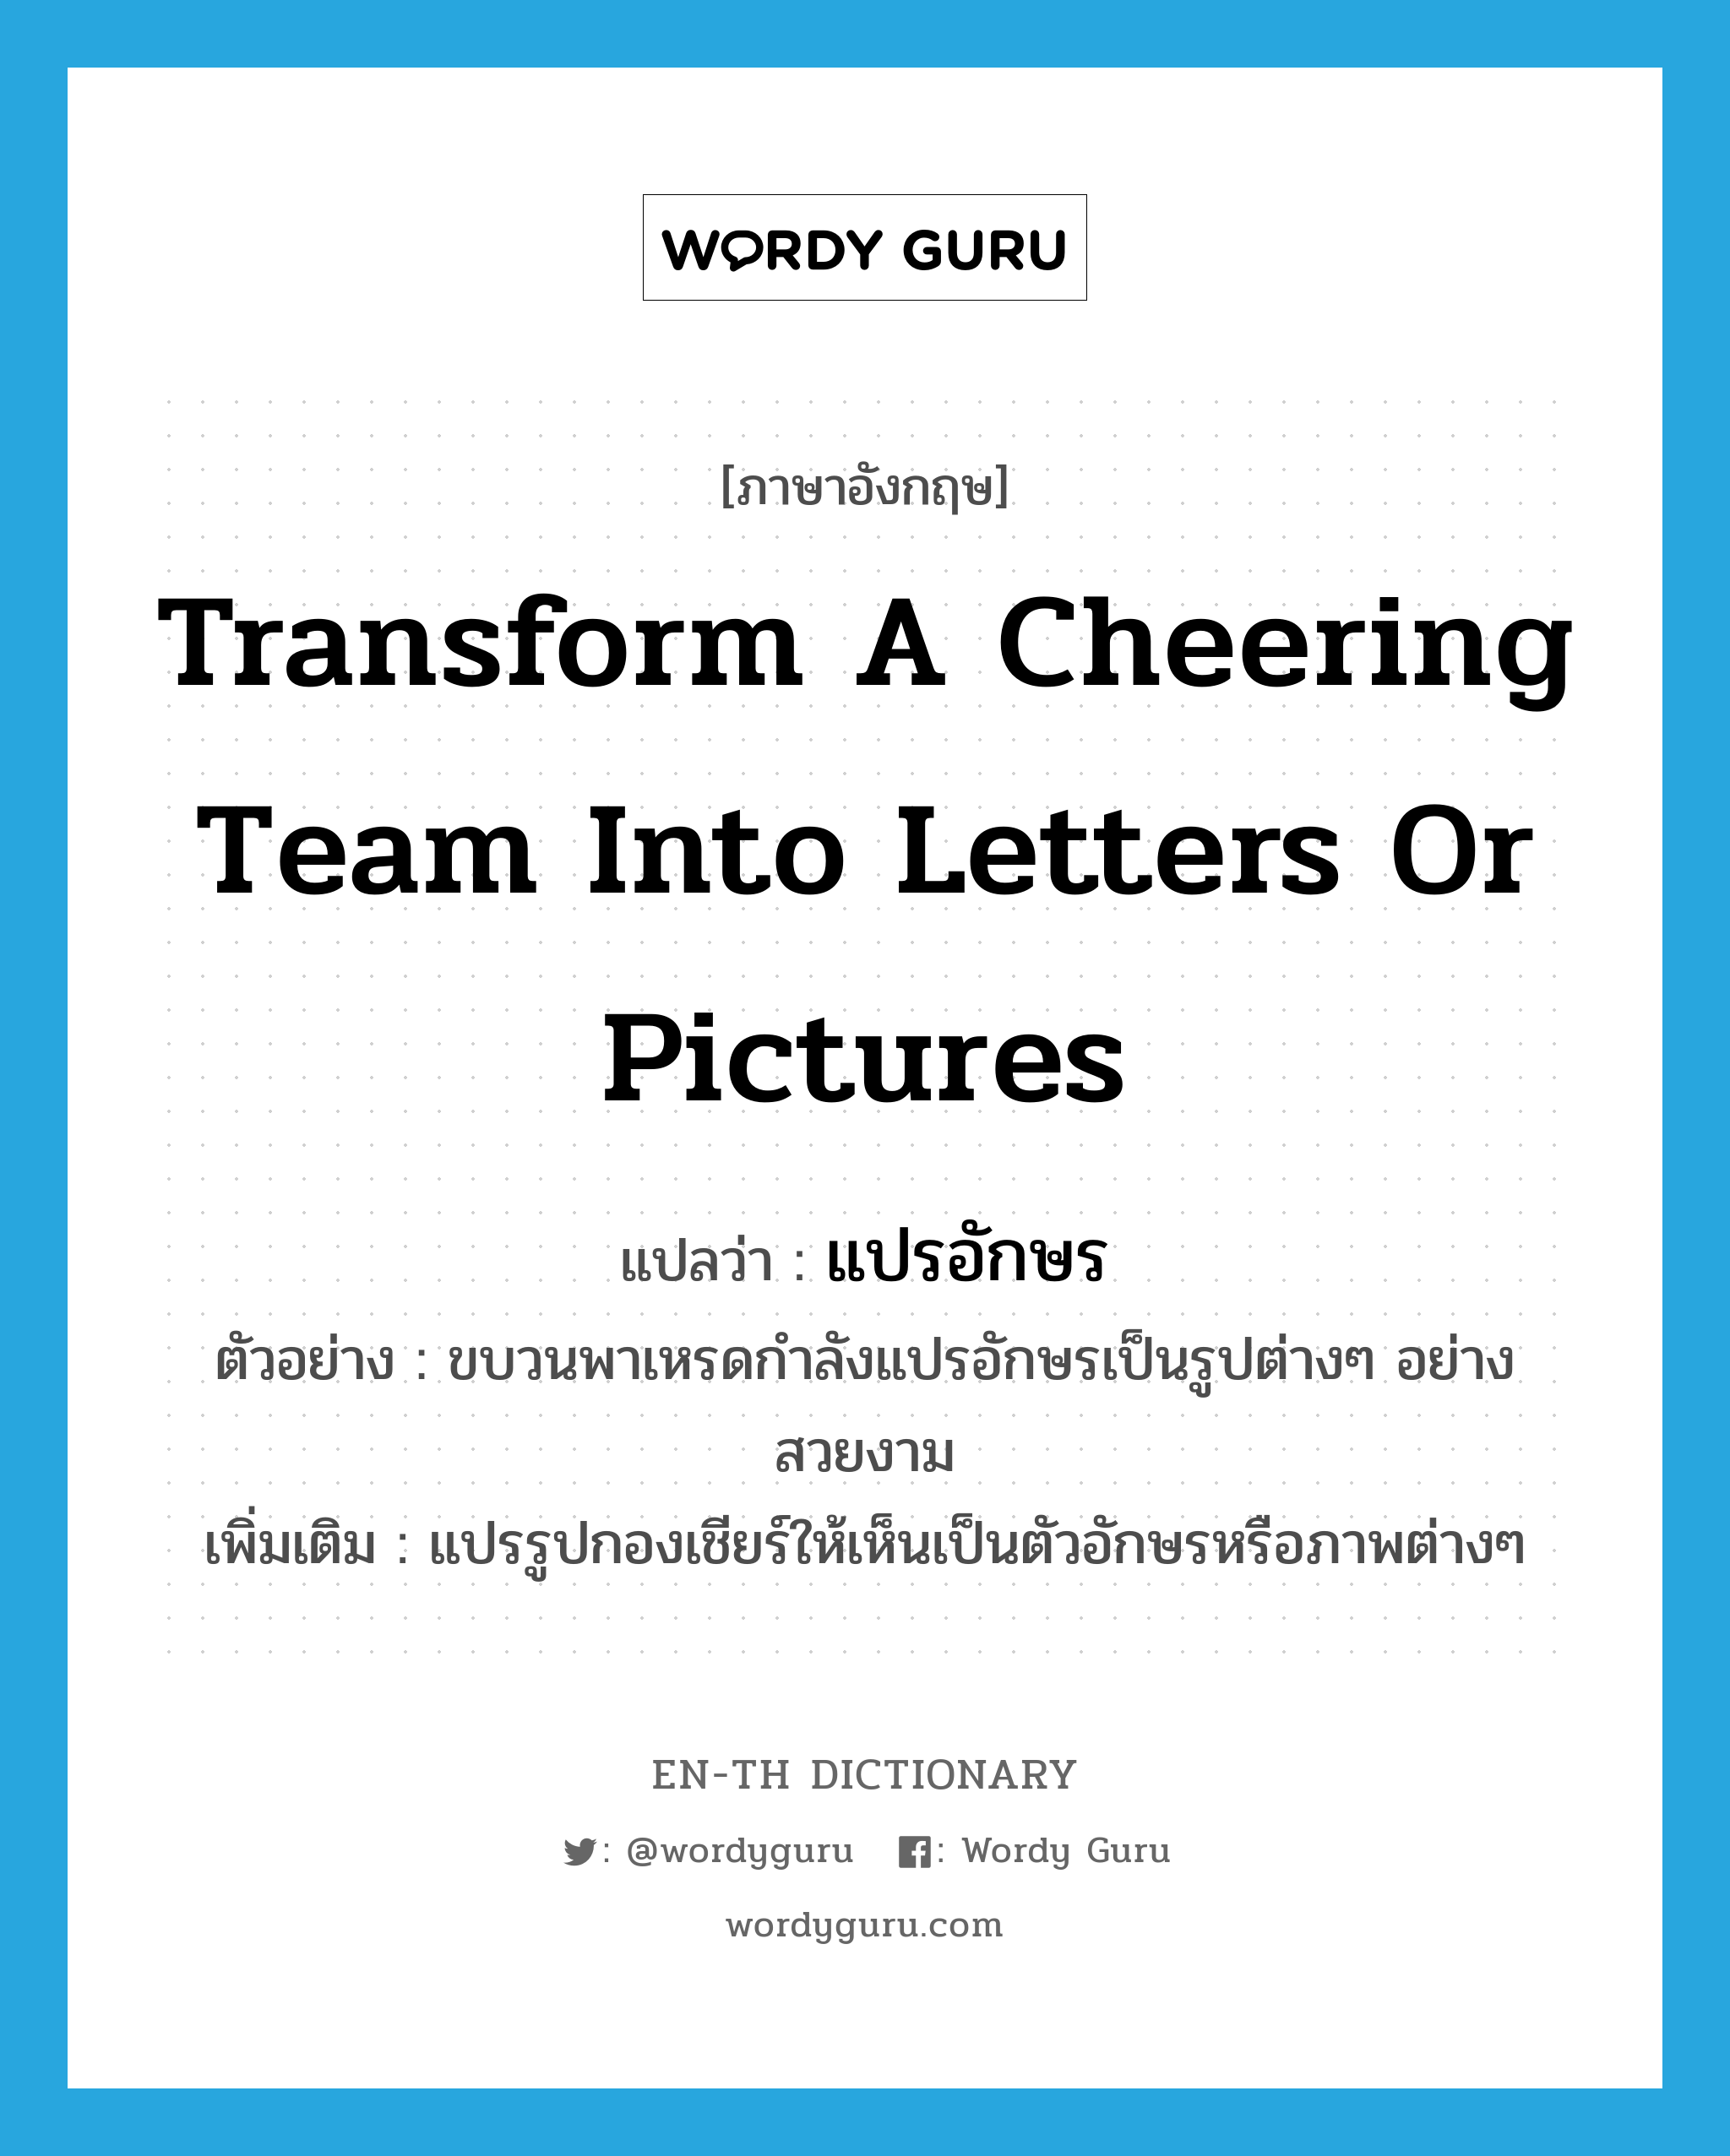 transform a cheering team into letters or pictures แปลว่า?, คำศัพท์ภาษาอังกฤษ transform a cheering team into letters or pictures แปลว่า แปรอักษร ประเภท V ตัวอย่าง ขบวนพาเหรดกำลังแปรอักษรเป็นรูปต่างๆ อย่างสวยงาม เพิ่มเติม แปรรูปกองเชียร์ให้เห็นเป็นตัวอักษรหรือภาพต่างๆ หมวด V